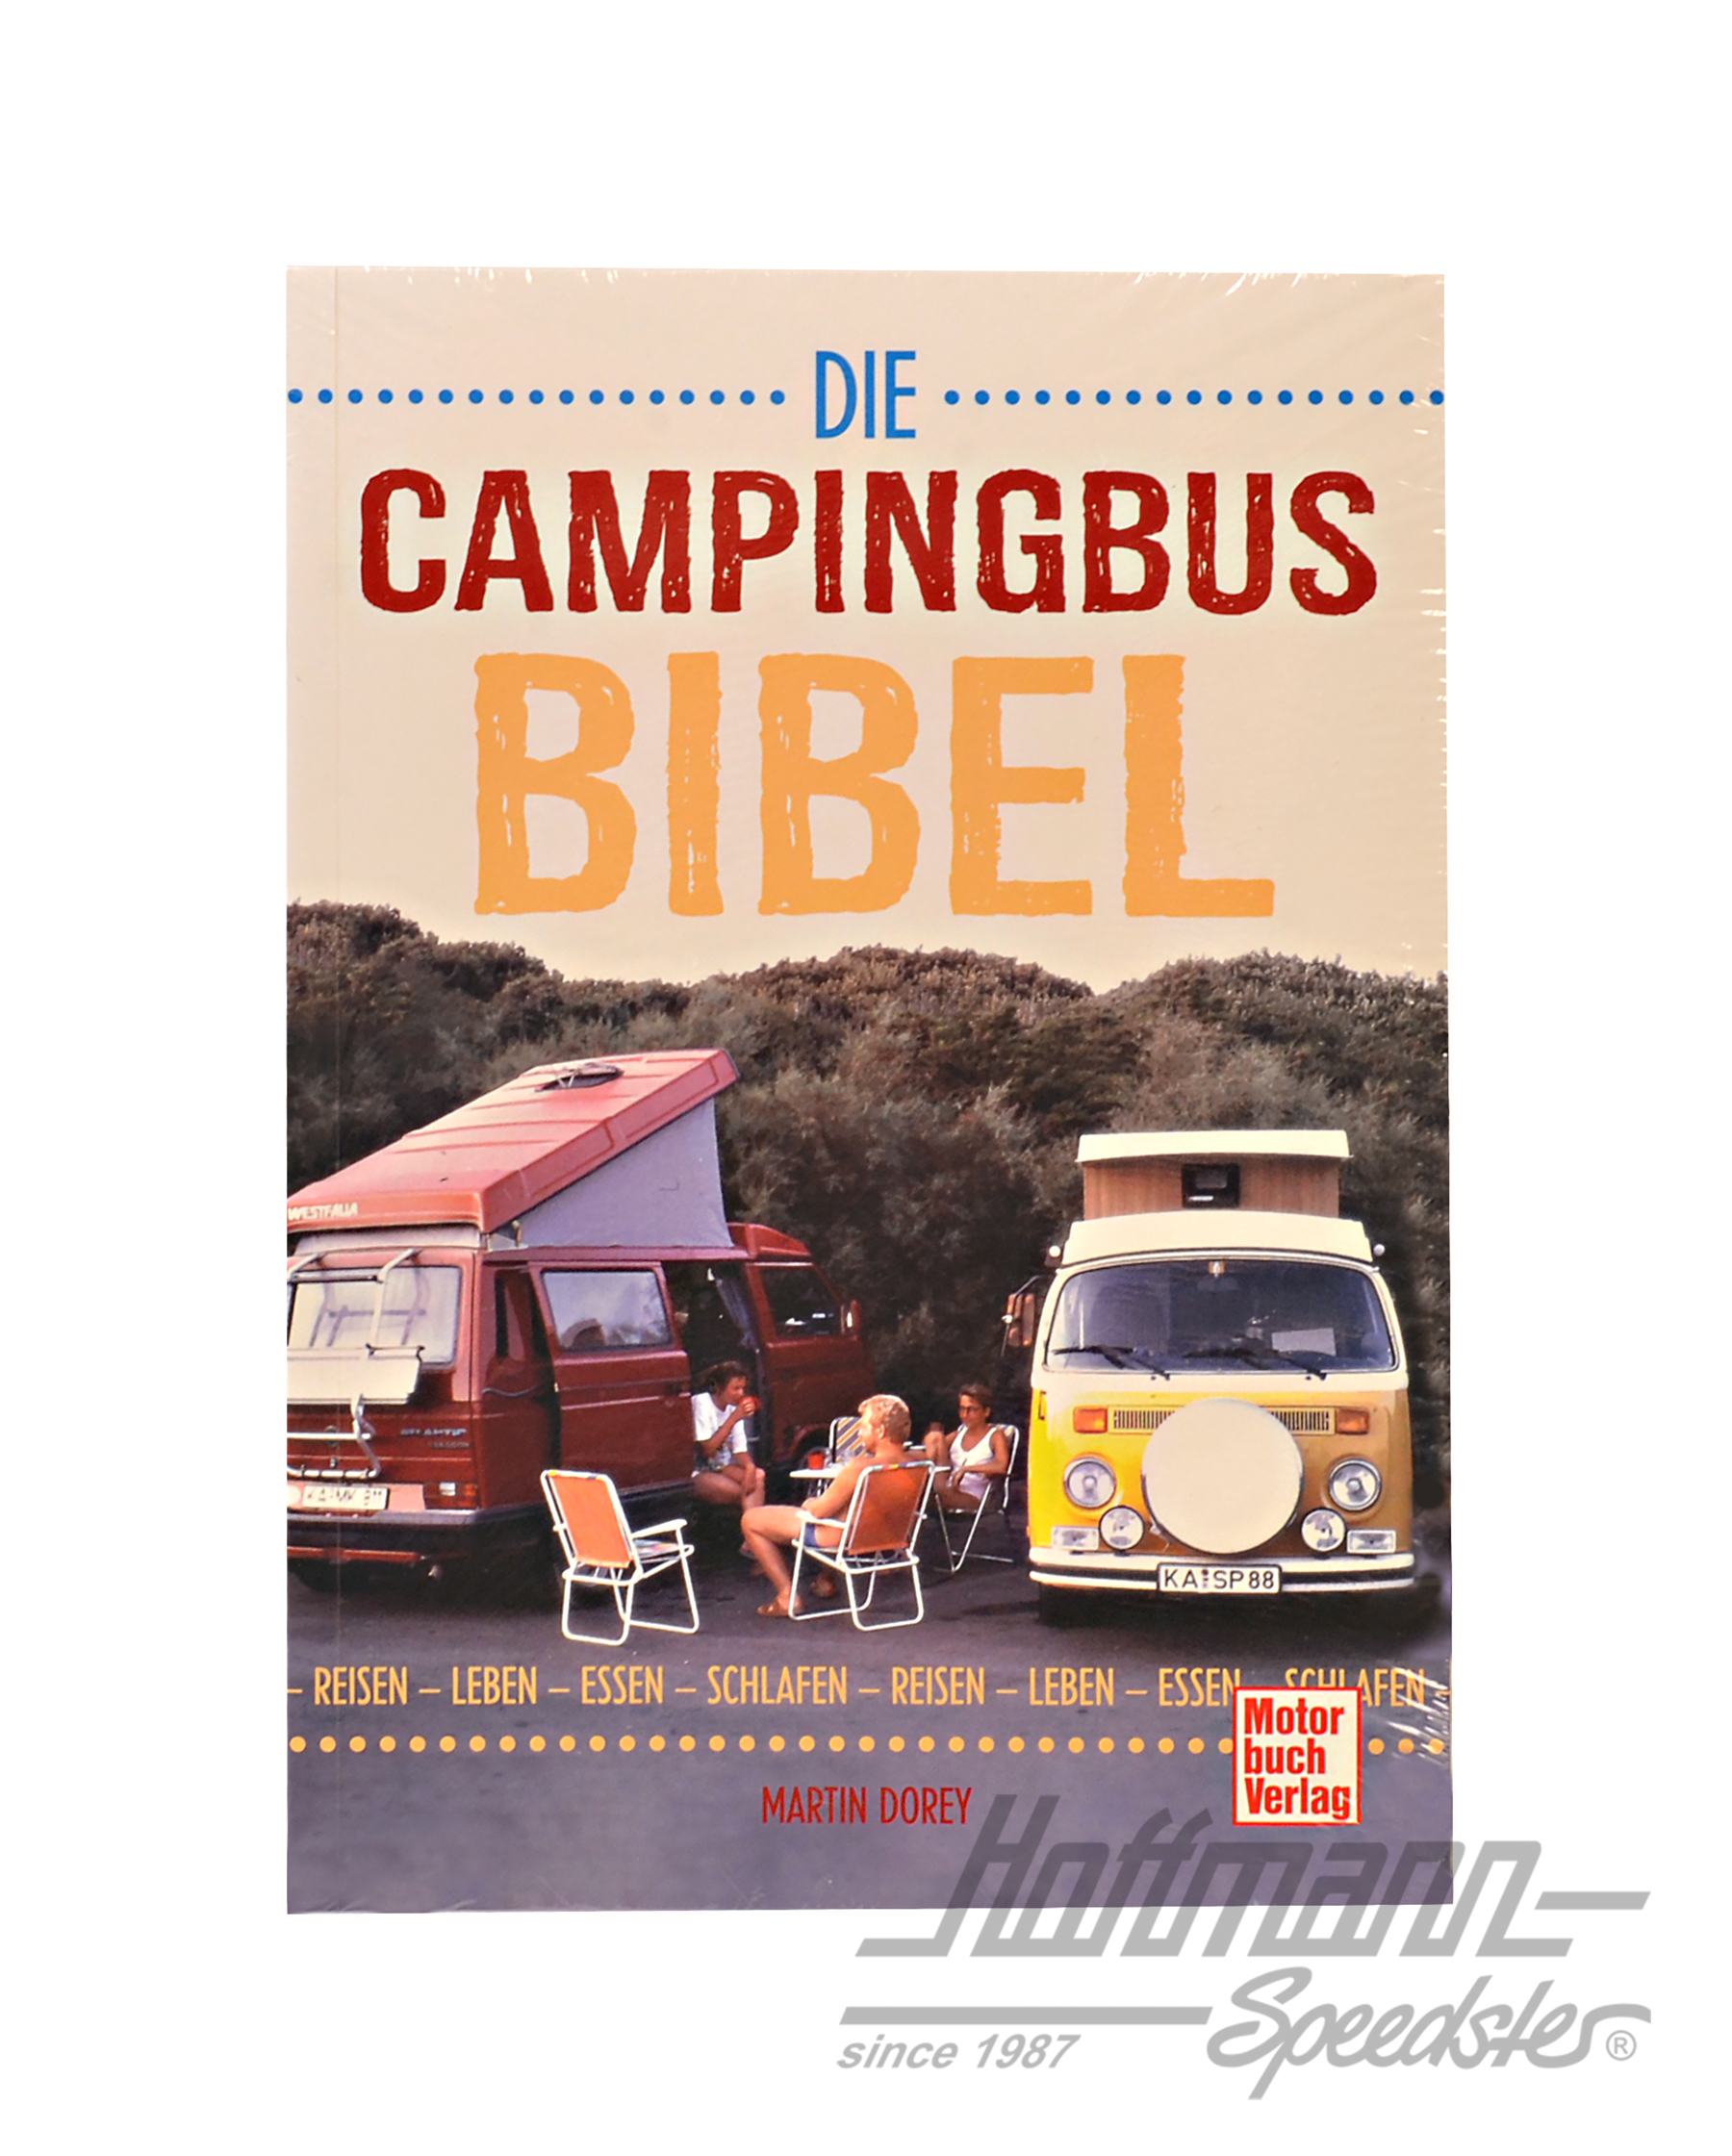 Die Campingbus-Bibel, Reisen,Leben,Essen